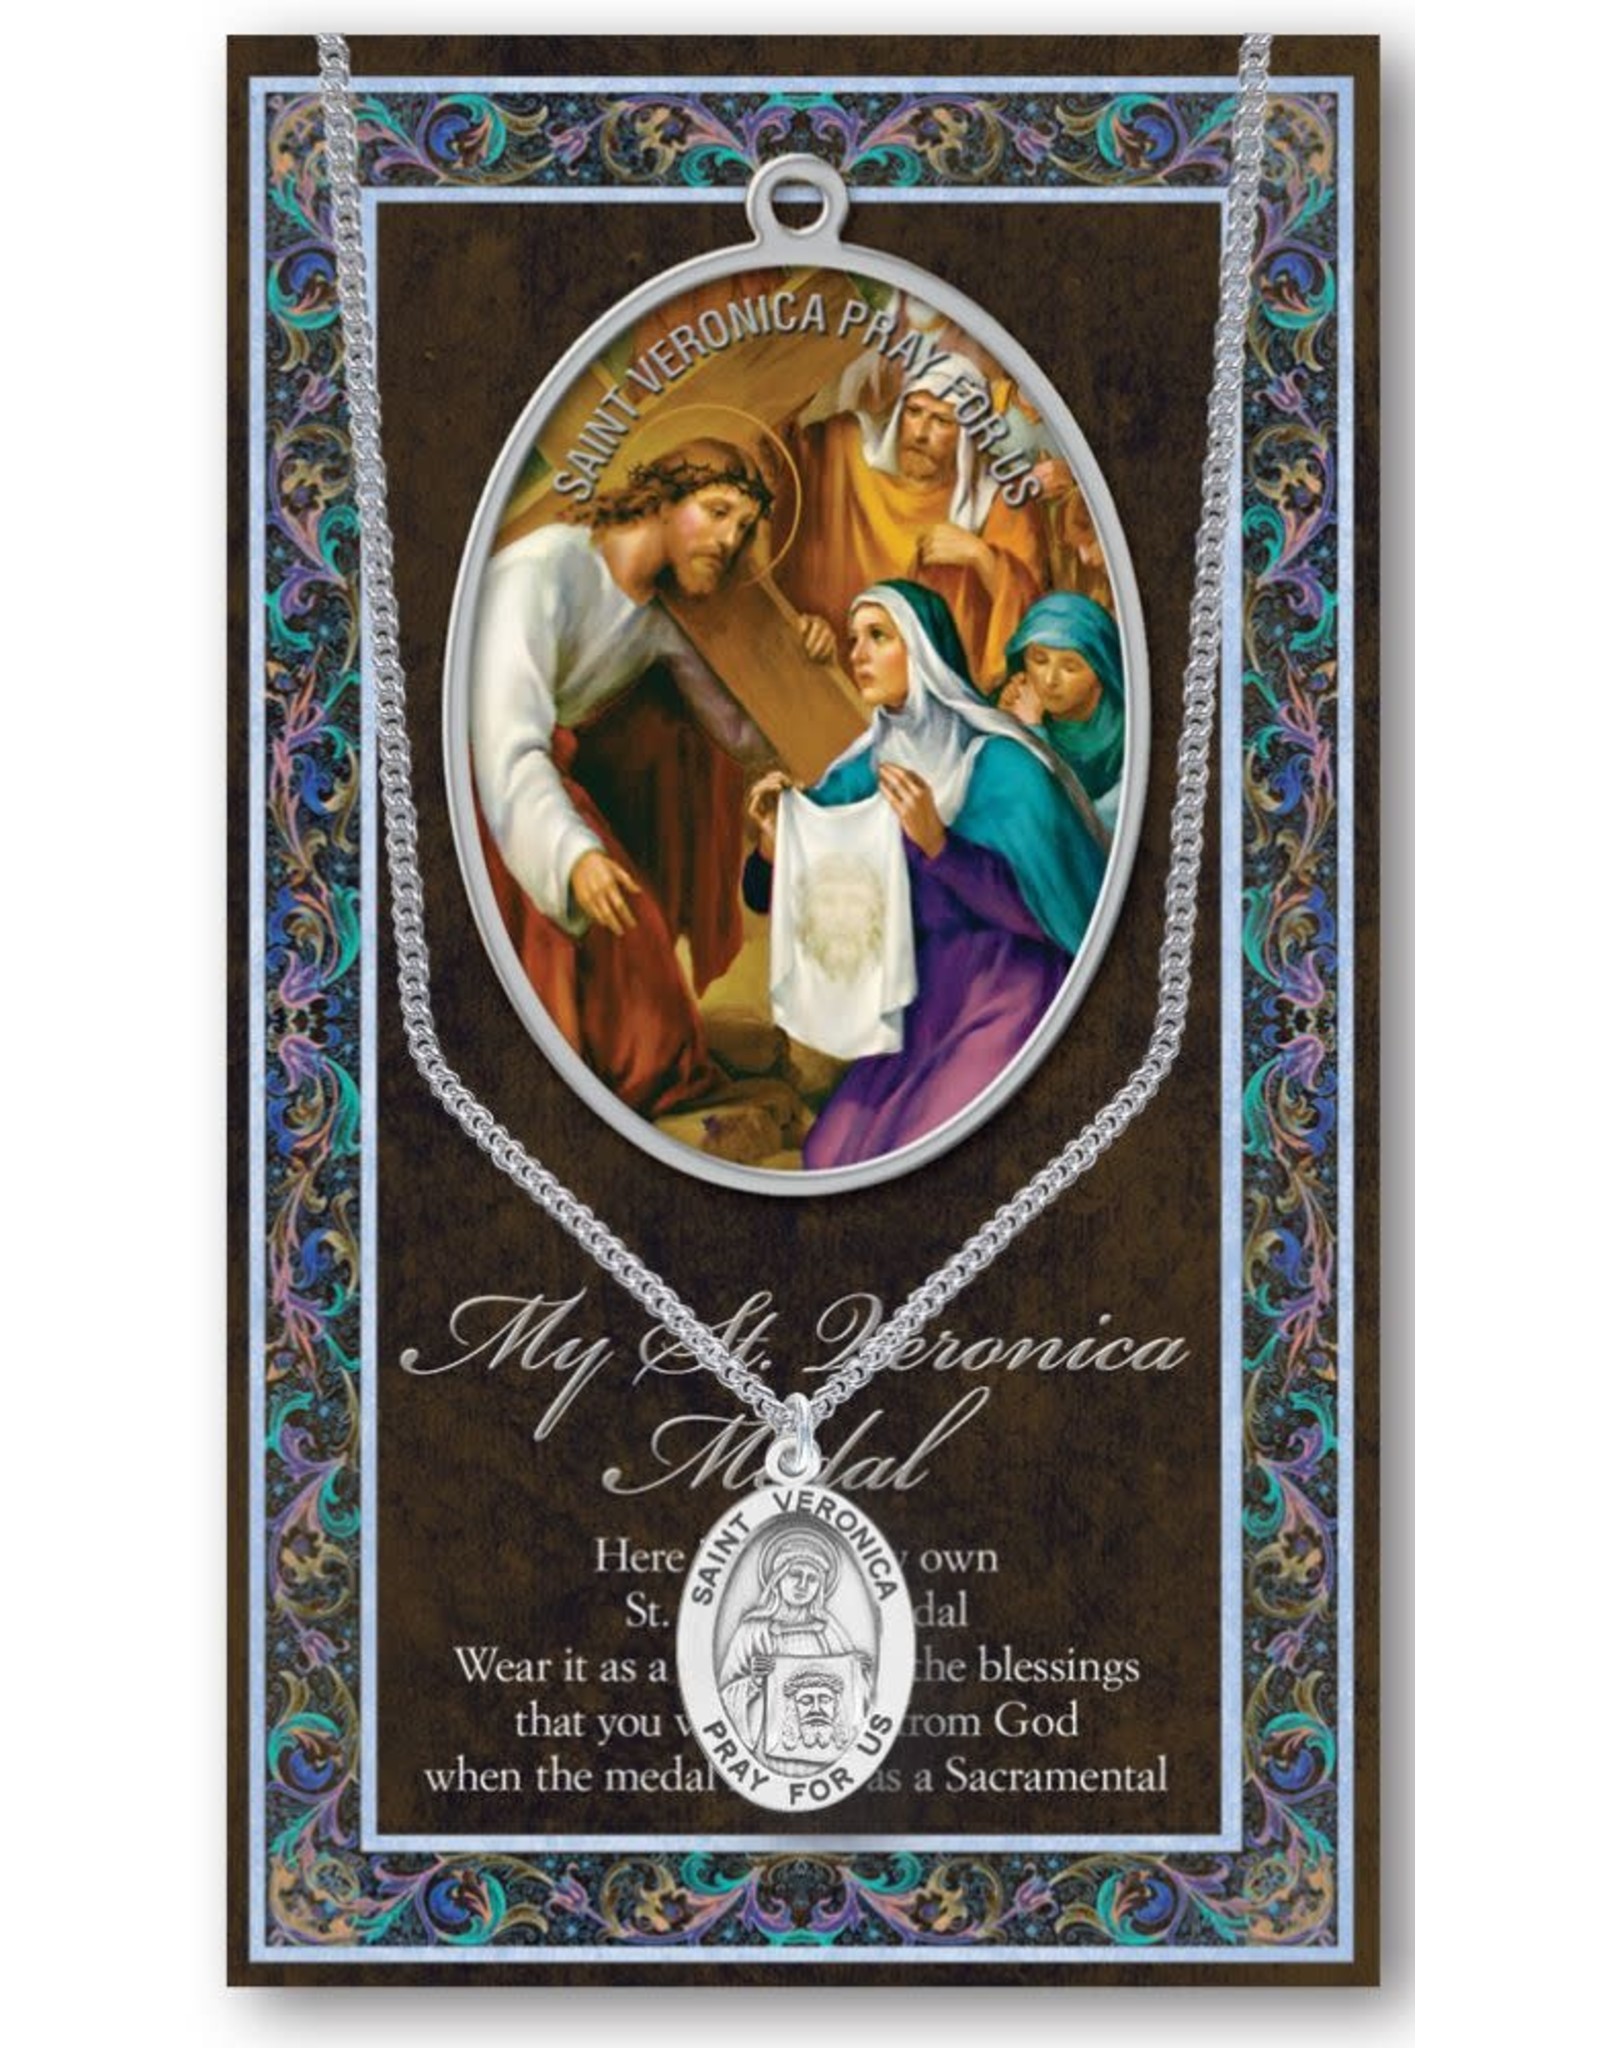 Hirten Saint Medal with Prayer Card - St. Veronica